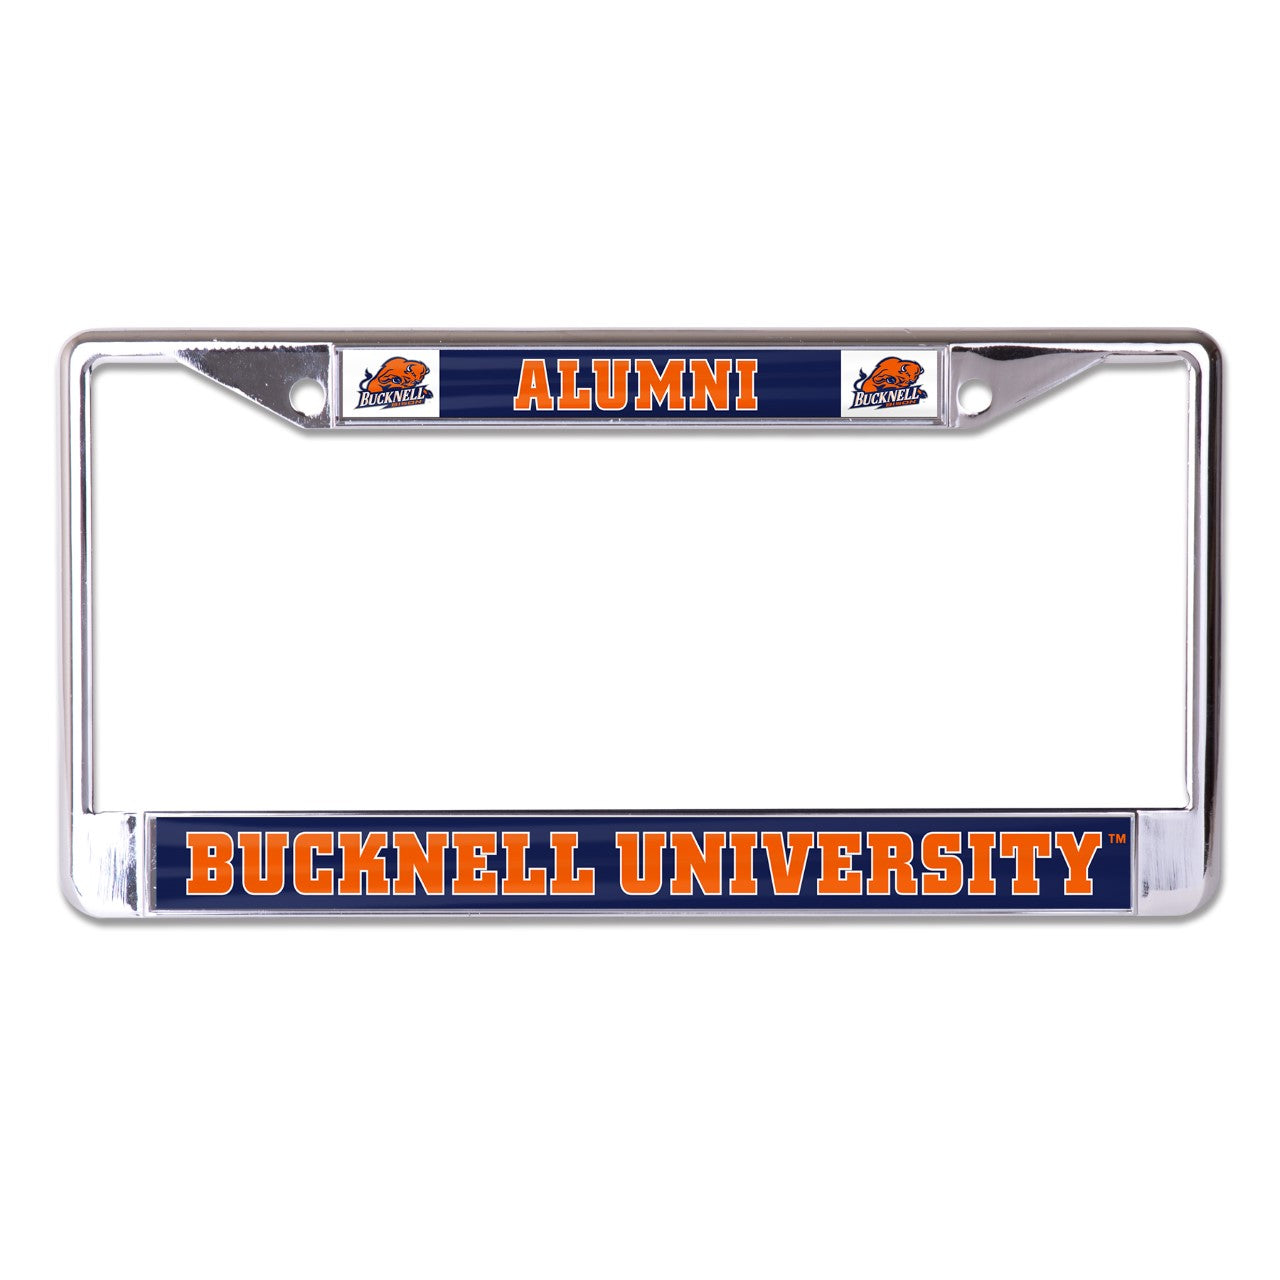 Bucknell University Alumni Chrome License Plate Frame